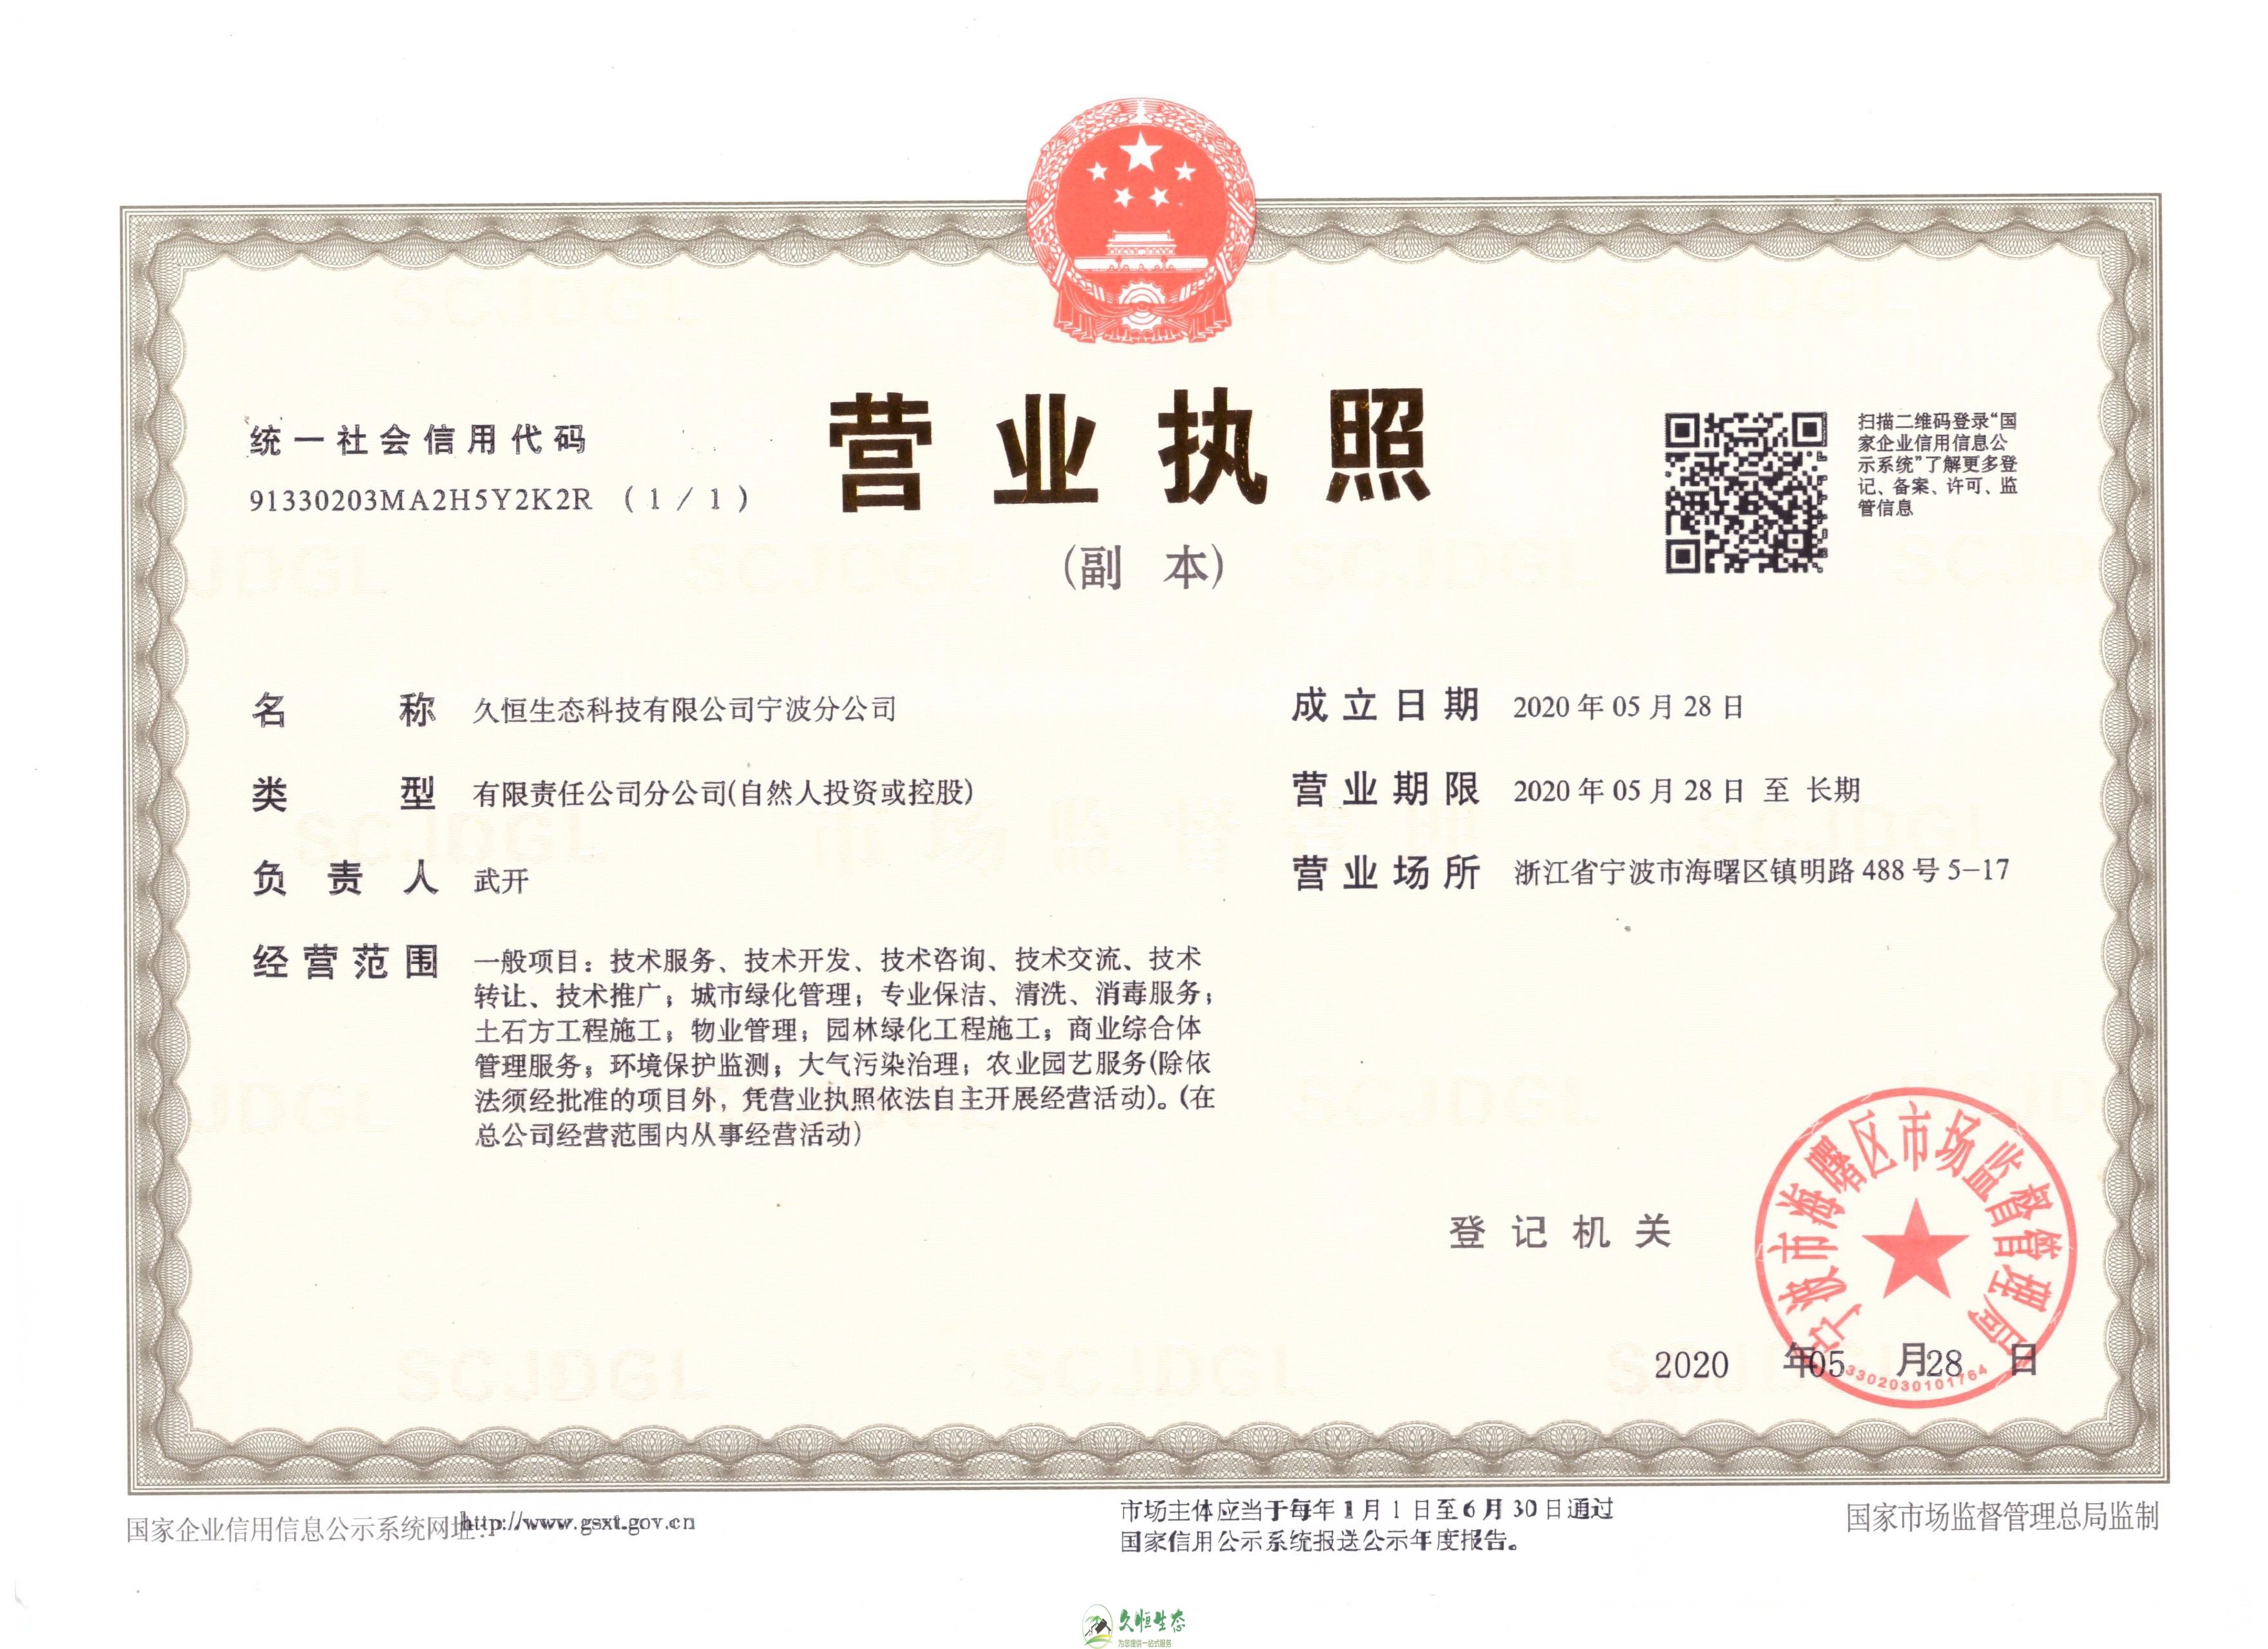 杭州滨江久恒生态宁波分公司2020年5月28日成立